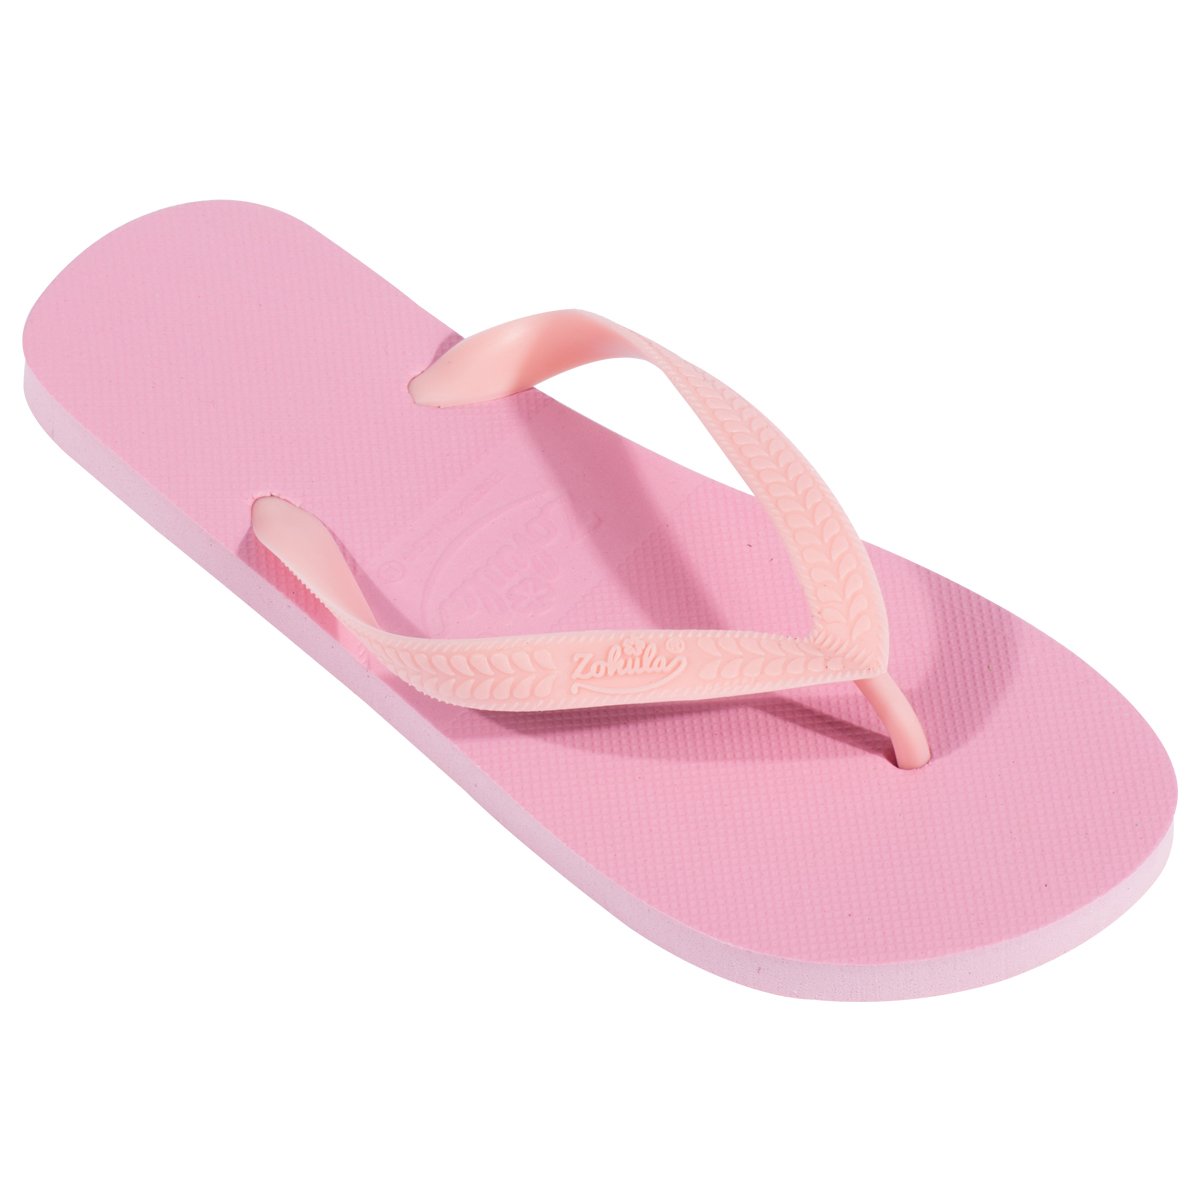 Zohula Originals Baby Pink Flip Flops – Wedding Flip Flops